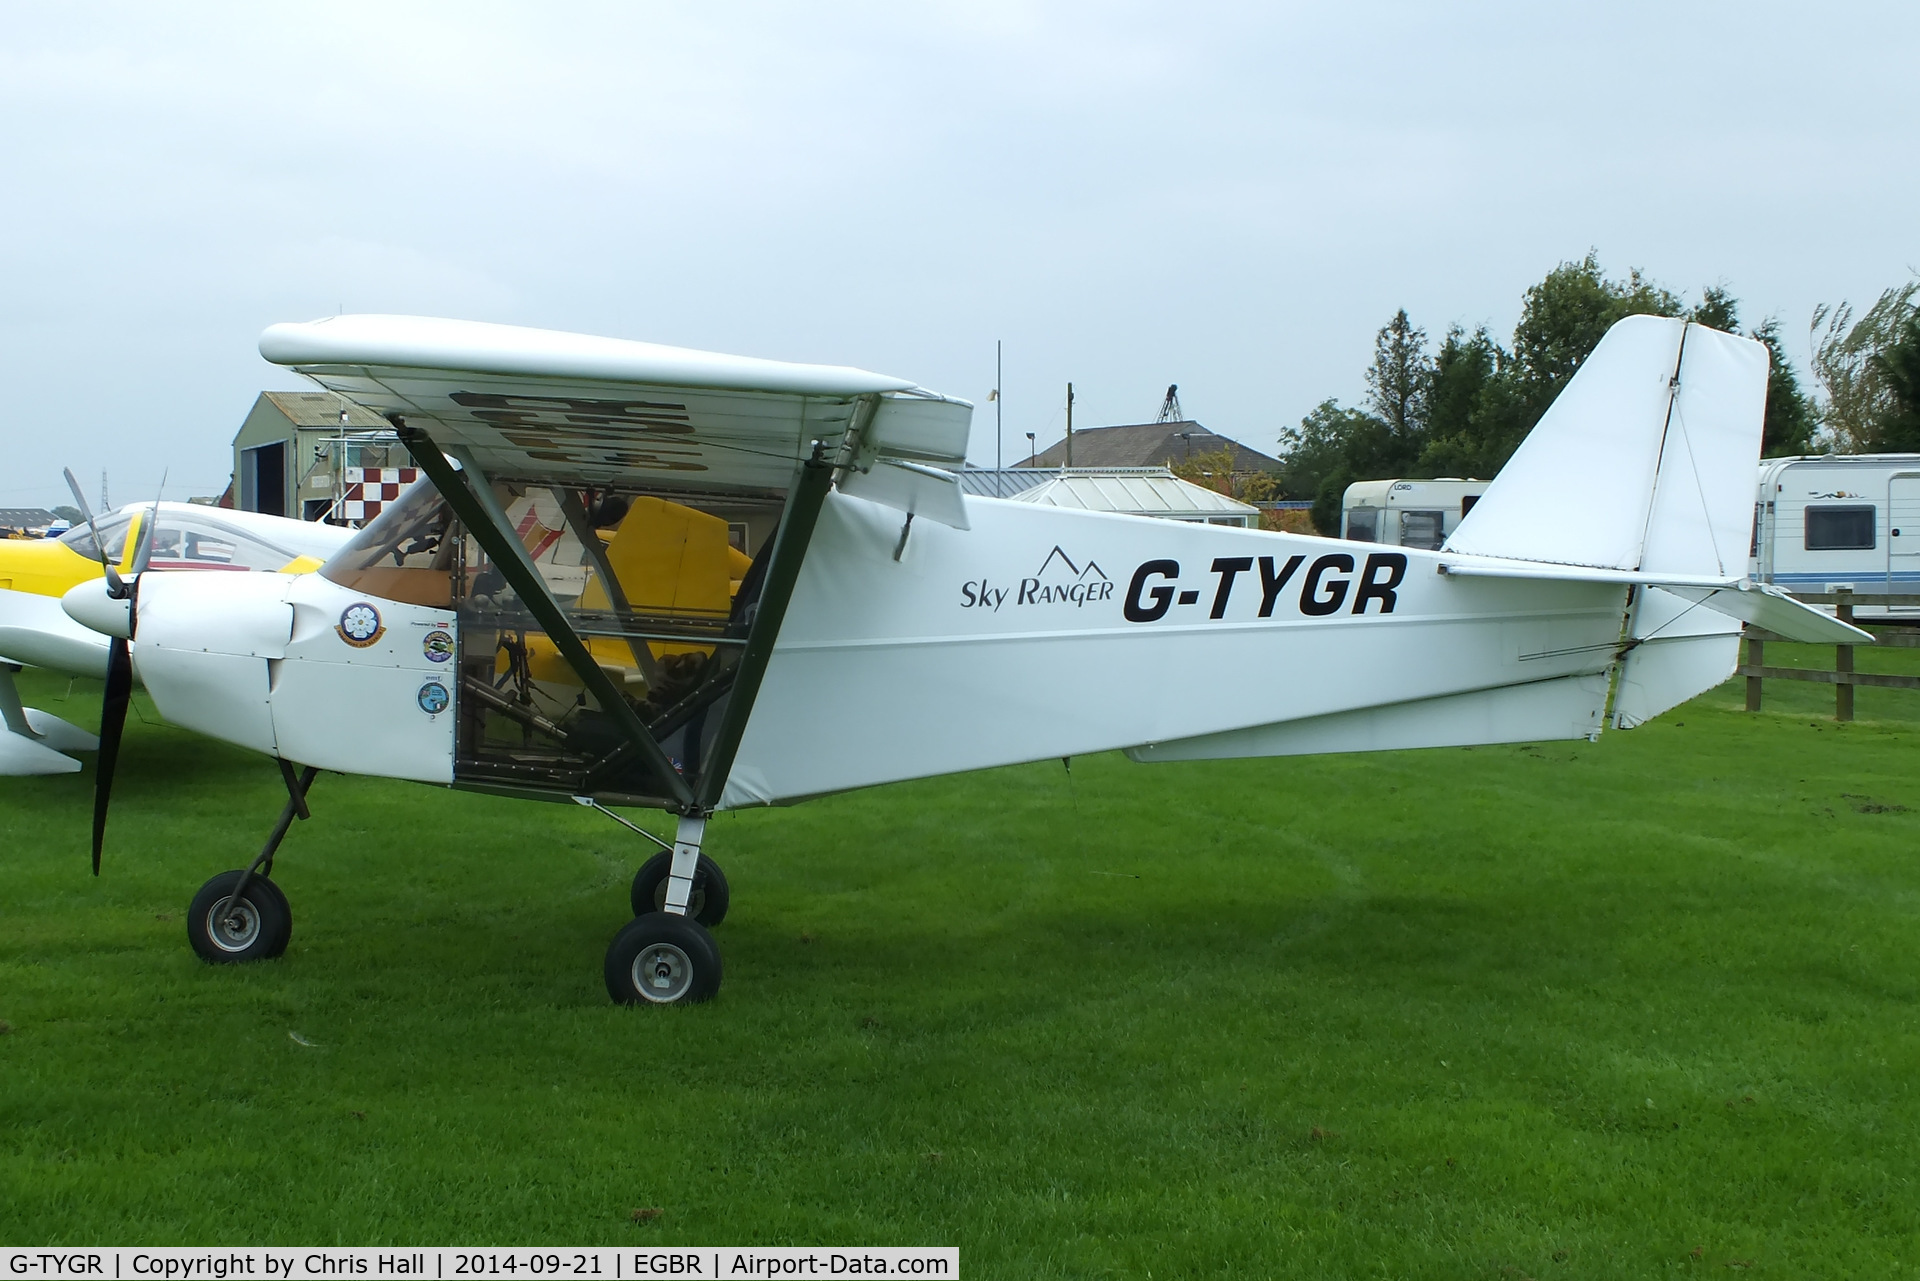 G-TYGR, 2007 Best Off Skyranger 912S(1) C/N BMAA/HB/420, at Breighton's Heli Fly-in, 2014